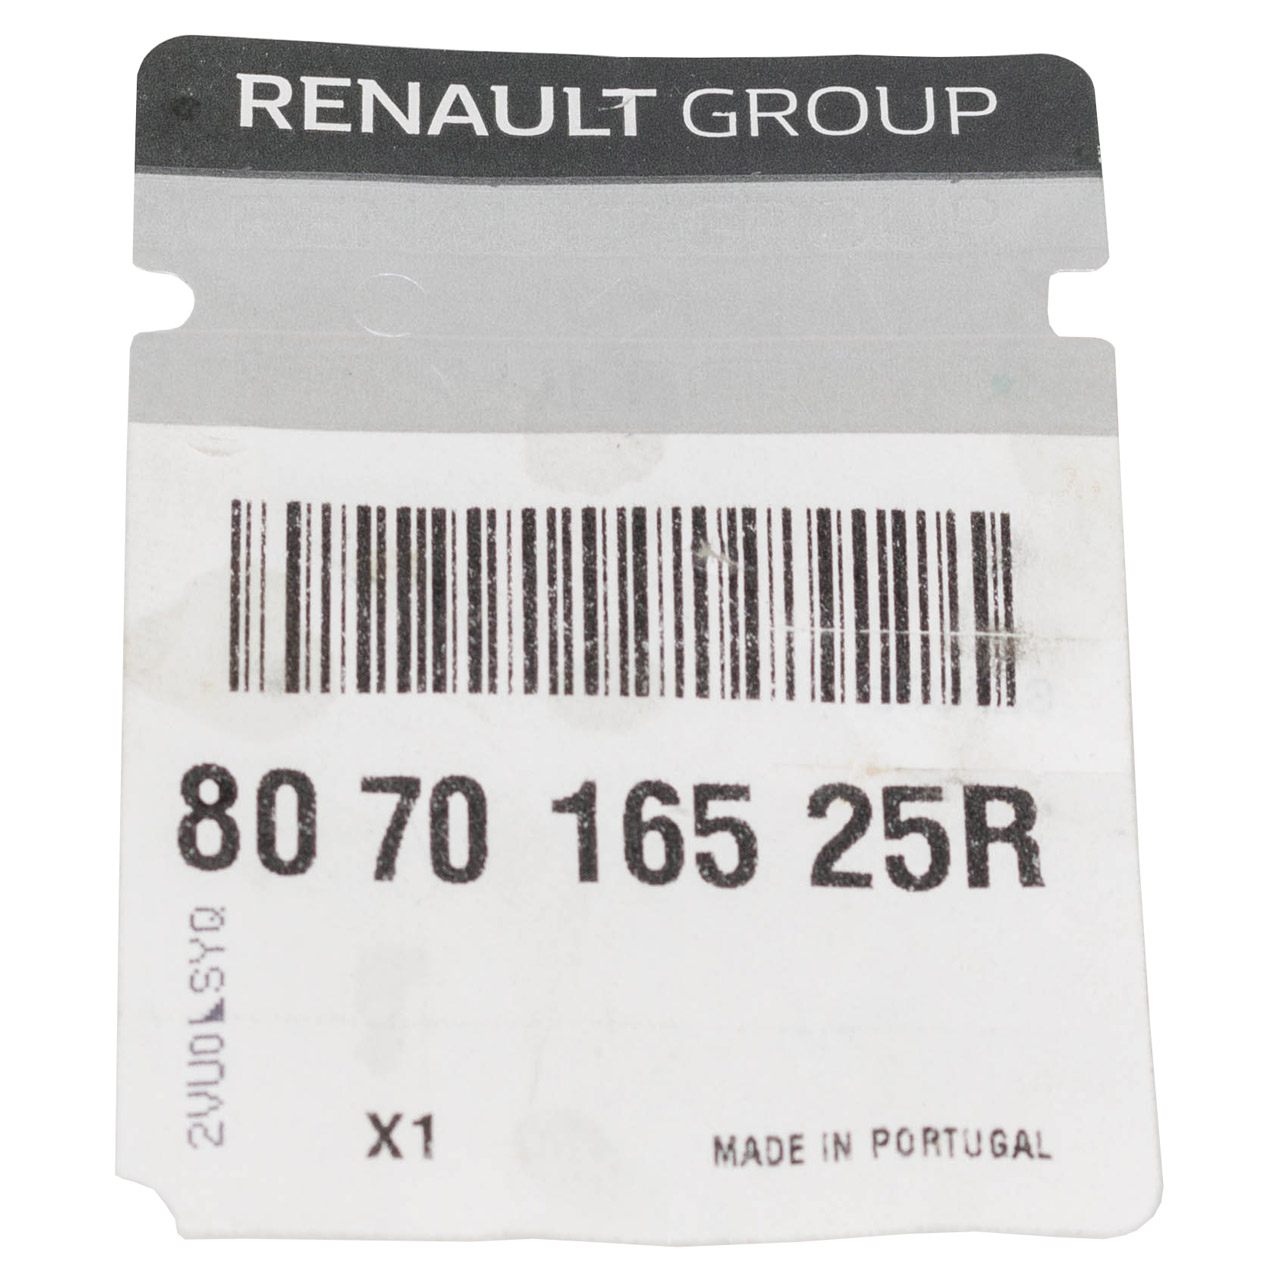 ORIGINAL Renault Fensterheber elektrisch + Motor Captur 1 vorne links 807016525R